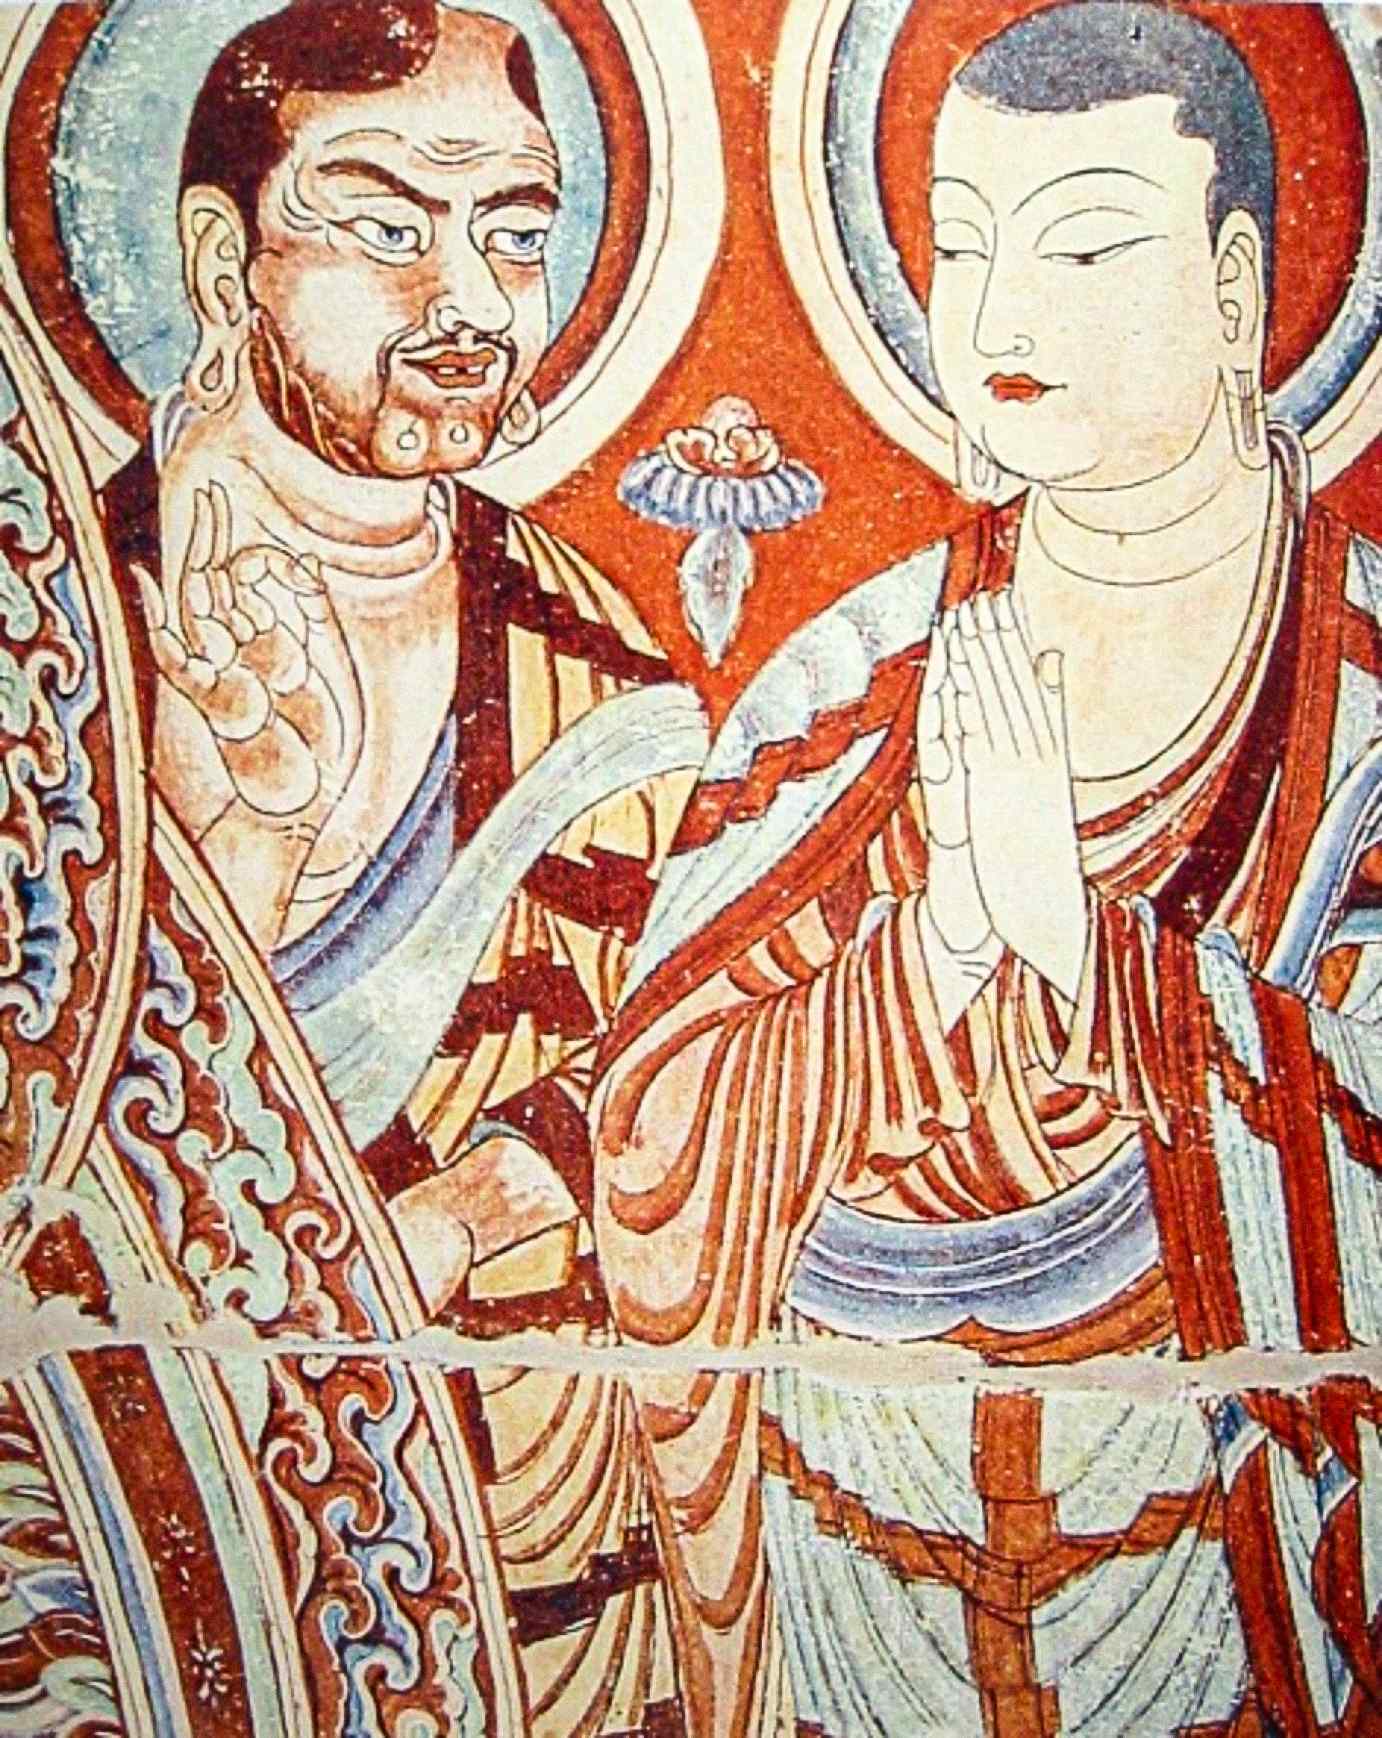 Ένας Καυκάσιος μοναχός της Κεντρικής Ασίας, πιθανώς ένας Ινδοευρωπαίος Σογδιανός ή Τοχαριανός, που διδάσκει έναν μοναχό της Ανατολικής Ασίας, ίσως έναν Τούρκο Ουιγούρο ή Κινέζο, σε μια τοιχογραφία του 9ου αιώνα μ.Χ. από τα Σπήλαια Bezeklik Thousand Buddha κοντά στο Turfan, Xinjiang, Κίνα.